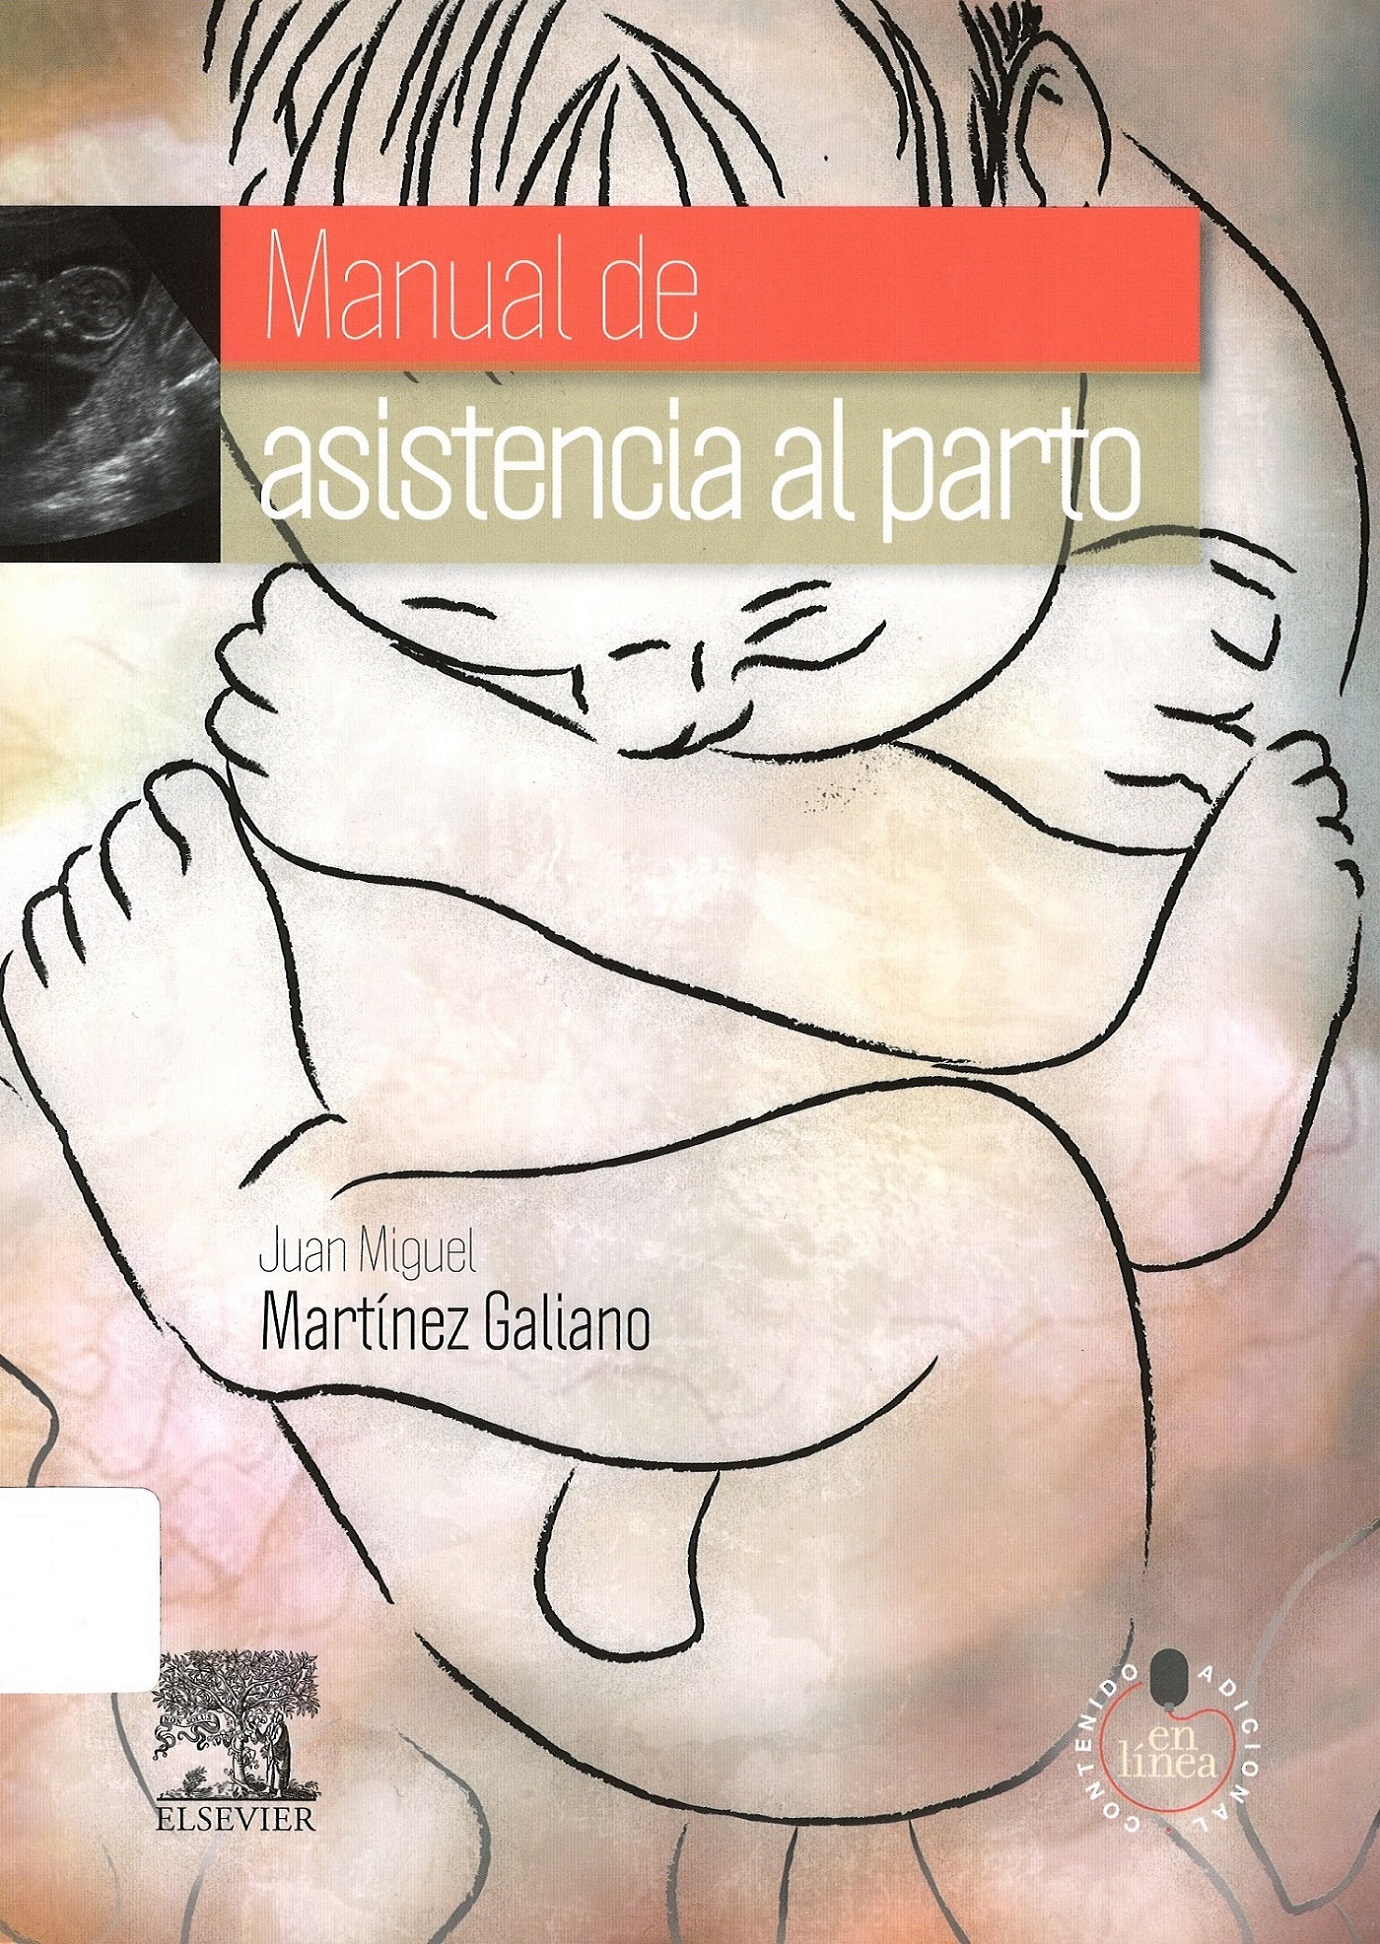 Imagen de portada del libro Manual de asistencia al parto